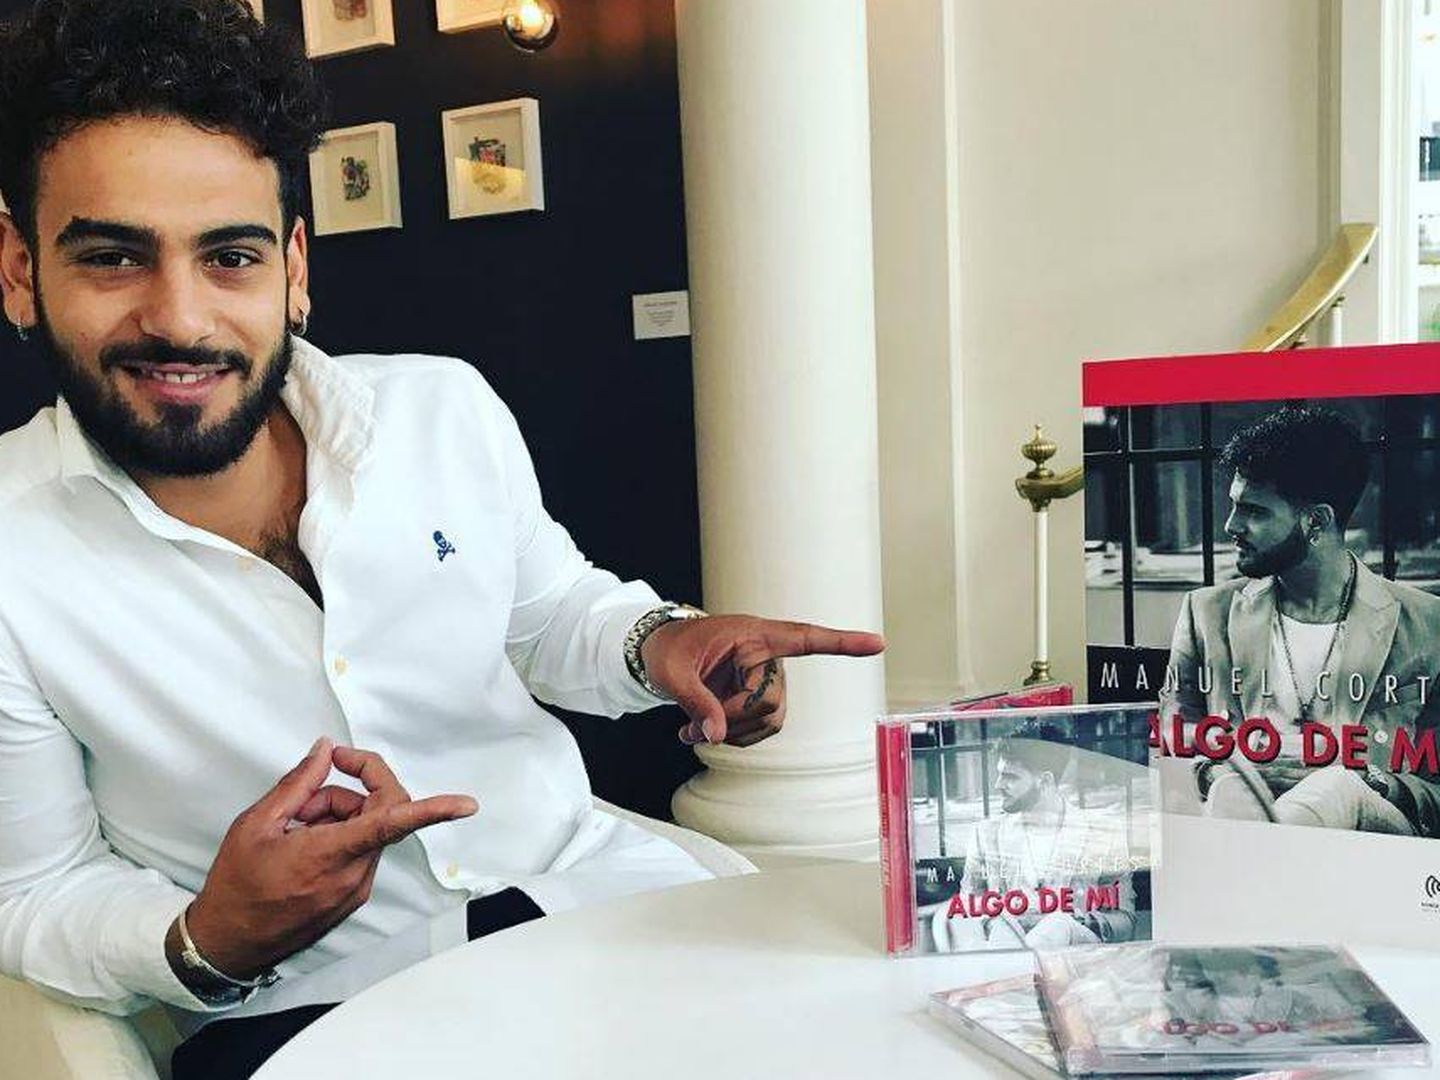  Manuel Cortés con su disco en una imagen de su Instagram